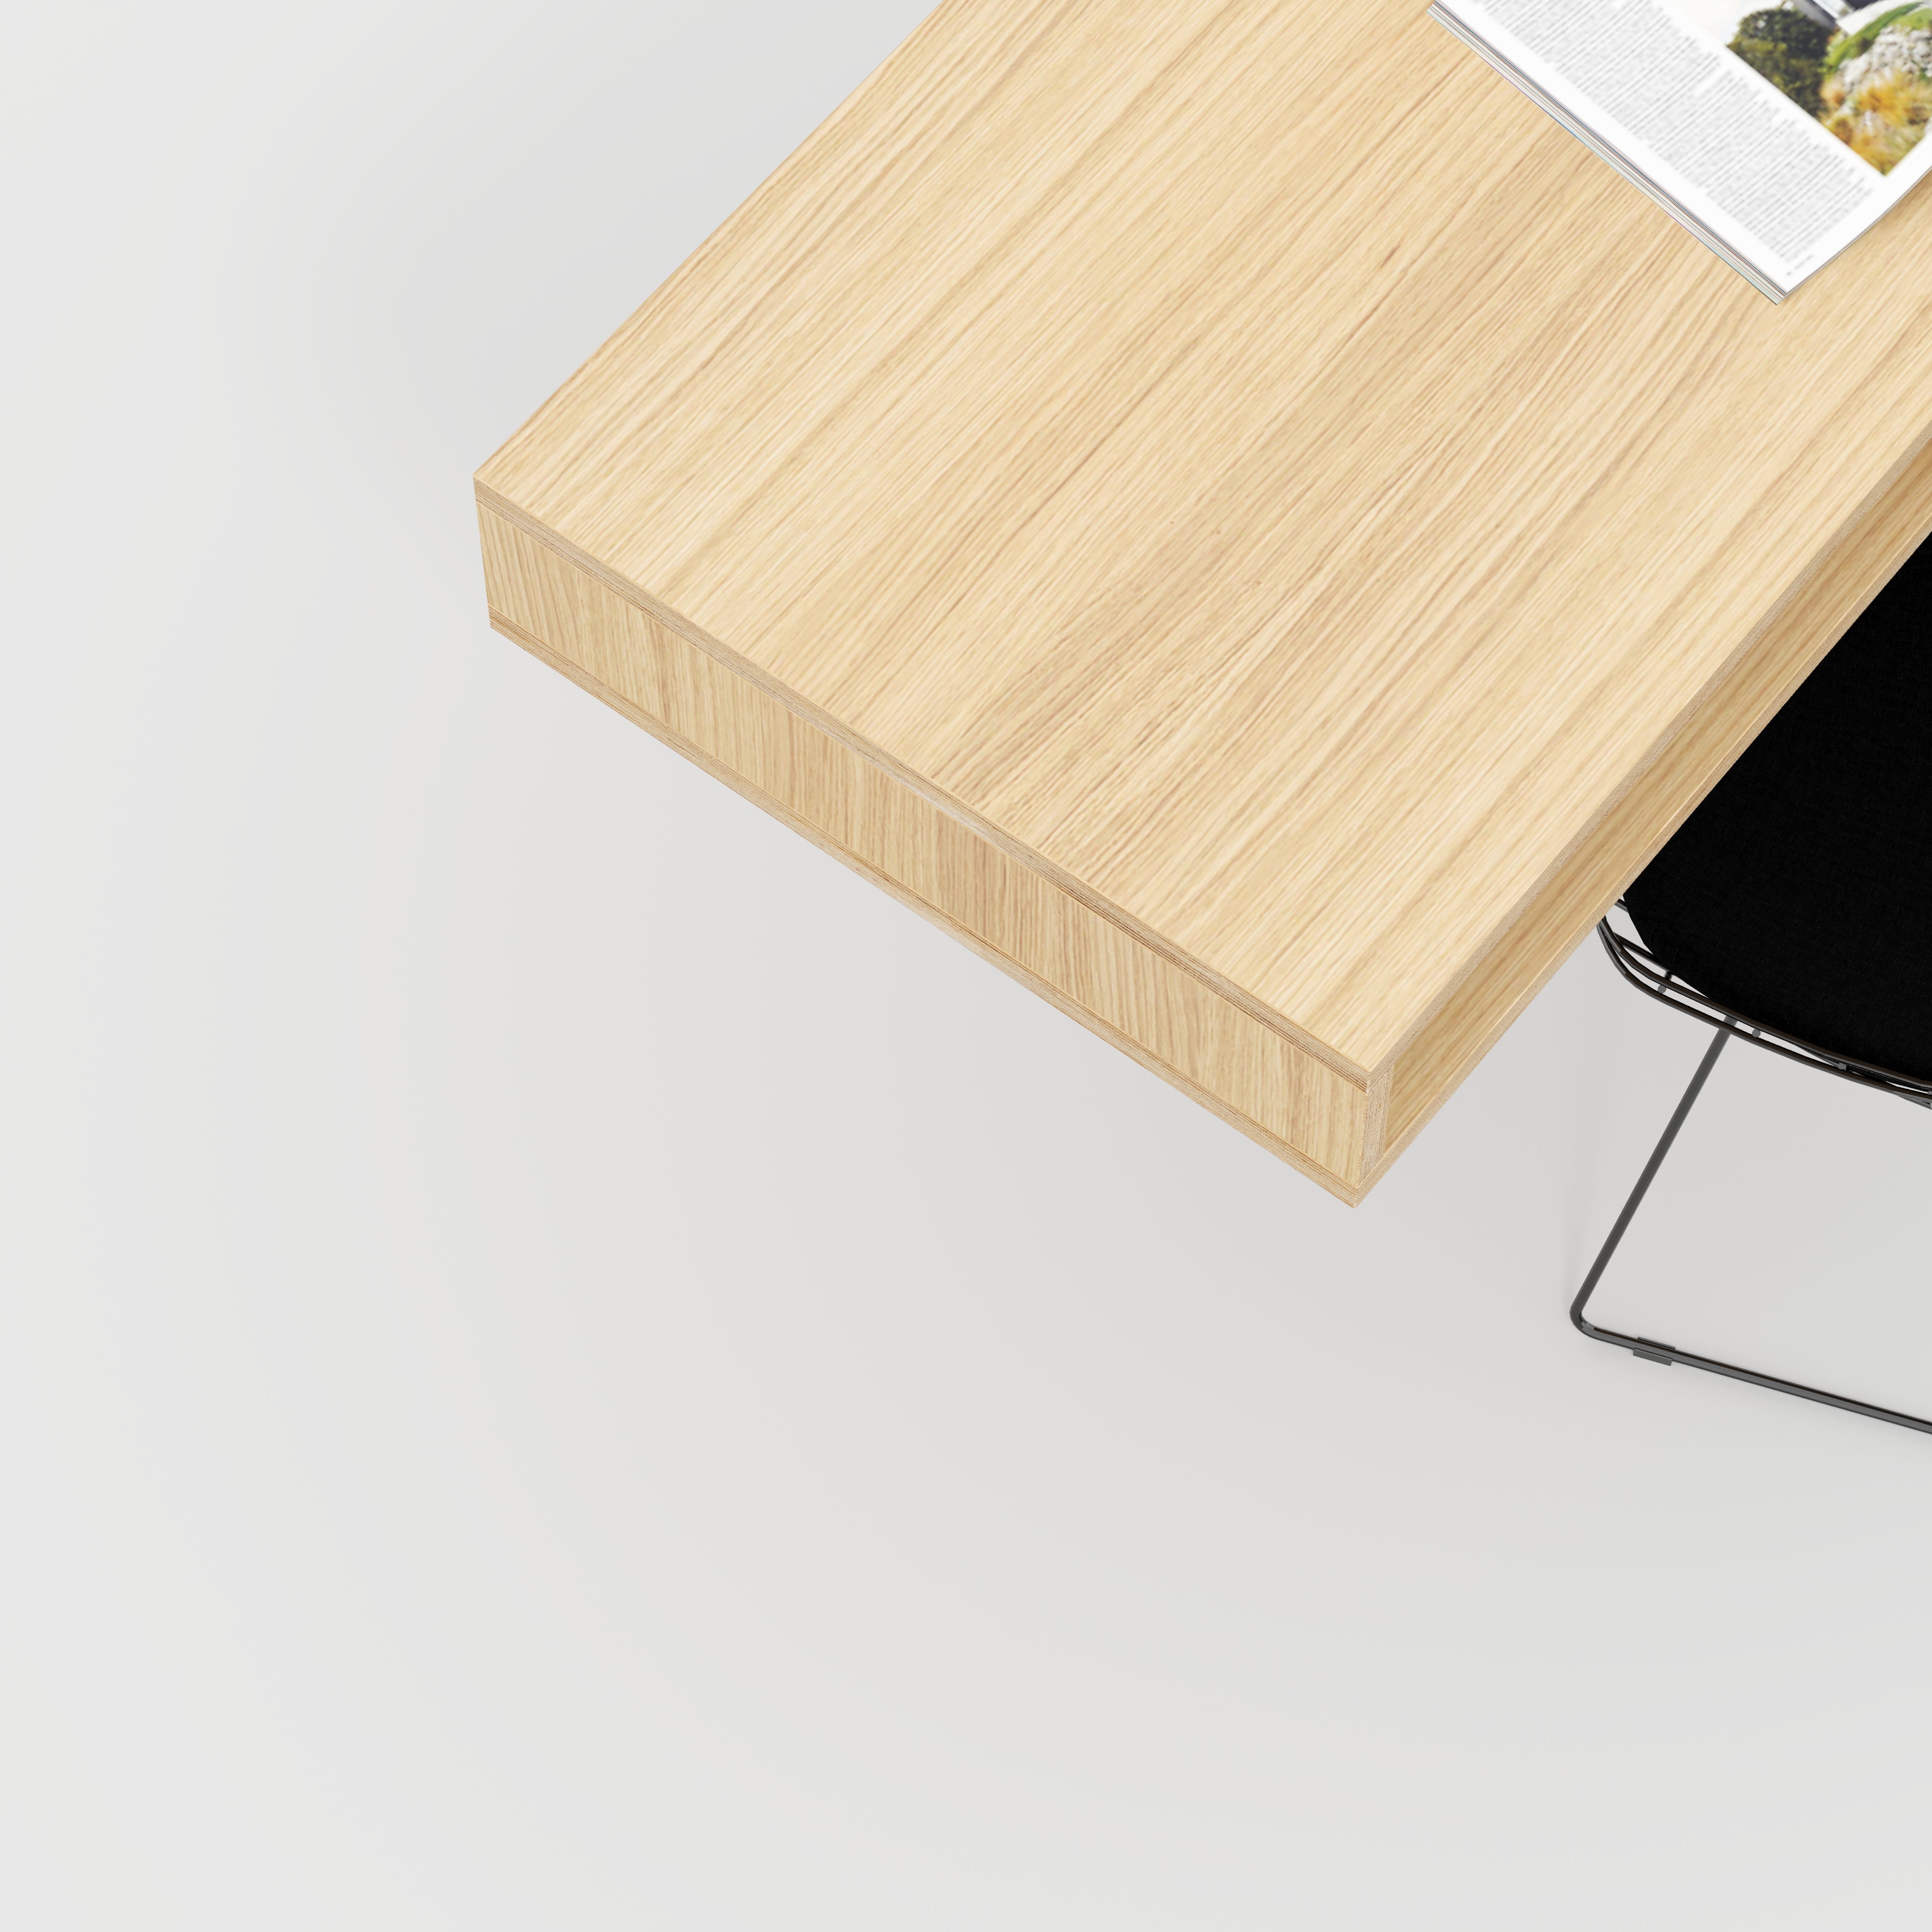 Plywood Desktop with Storage - Plywood Oak - 1200(w) x 600(d) x 150(h)